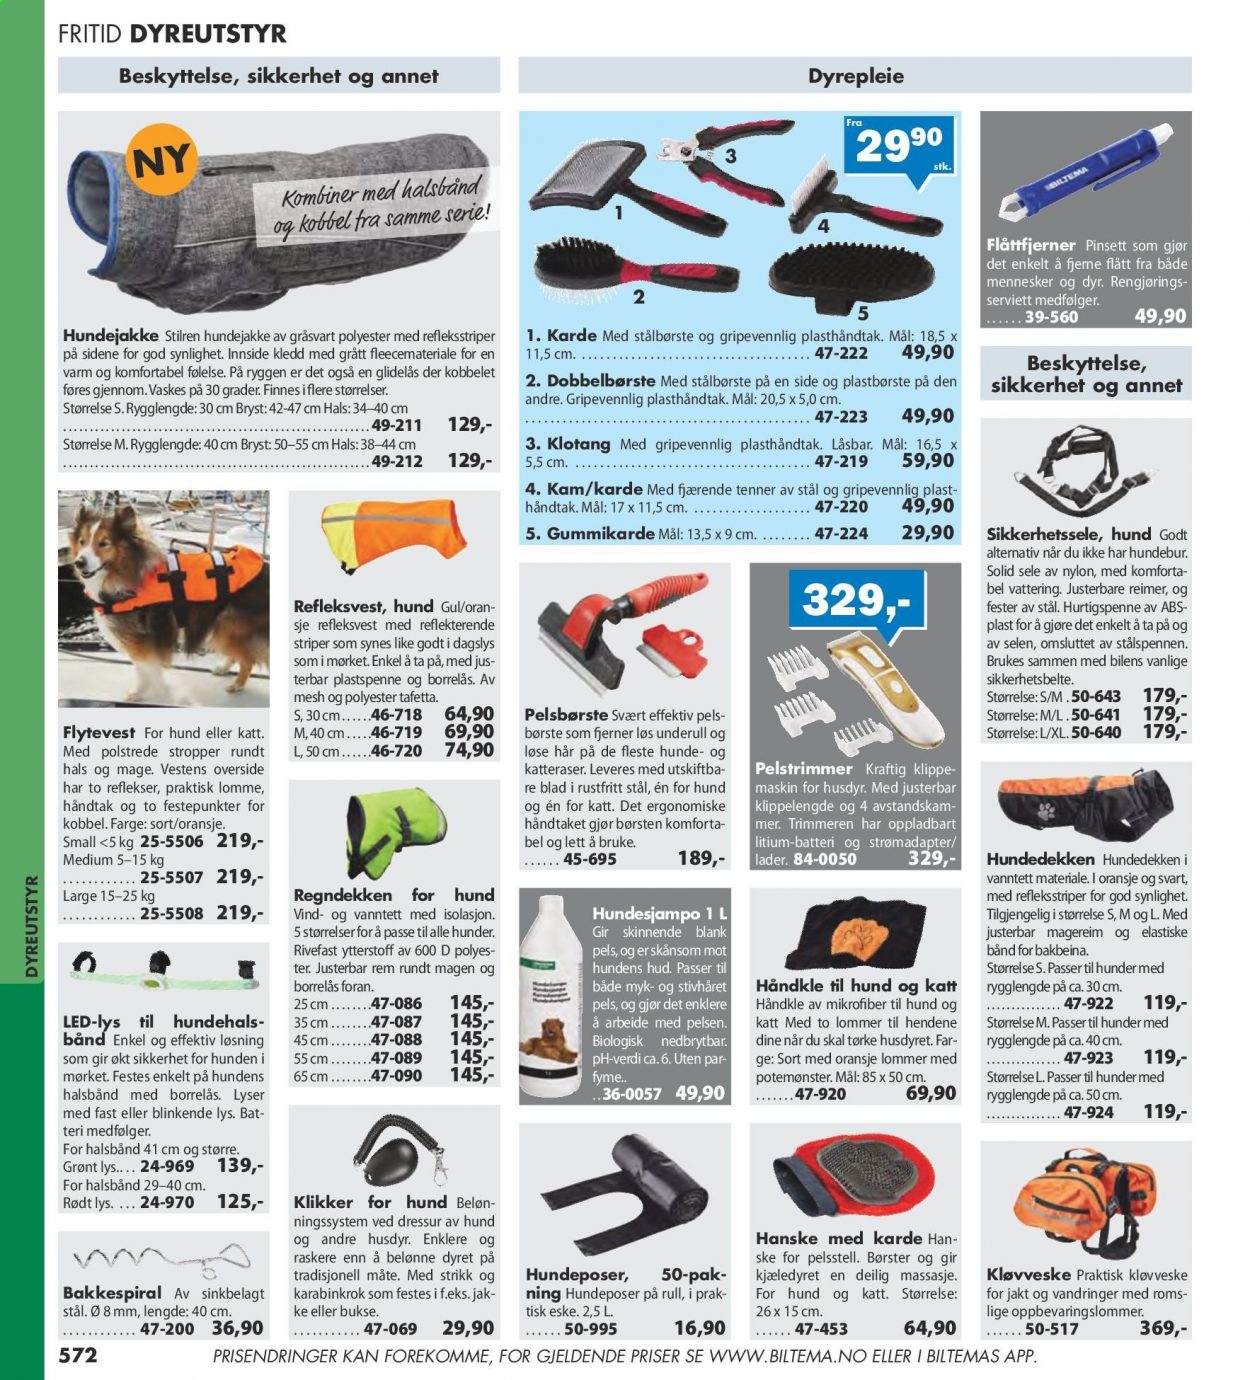 thumbnail - Kundeavis Biltema - Produkter fra tilbudsaviser - håndkle, hansker, refleksvest. Side 572.